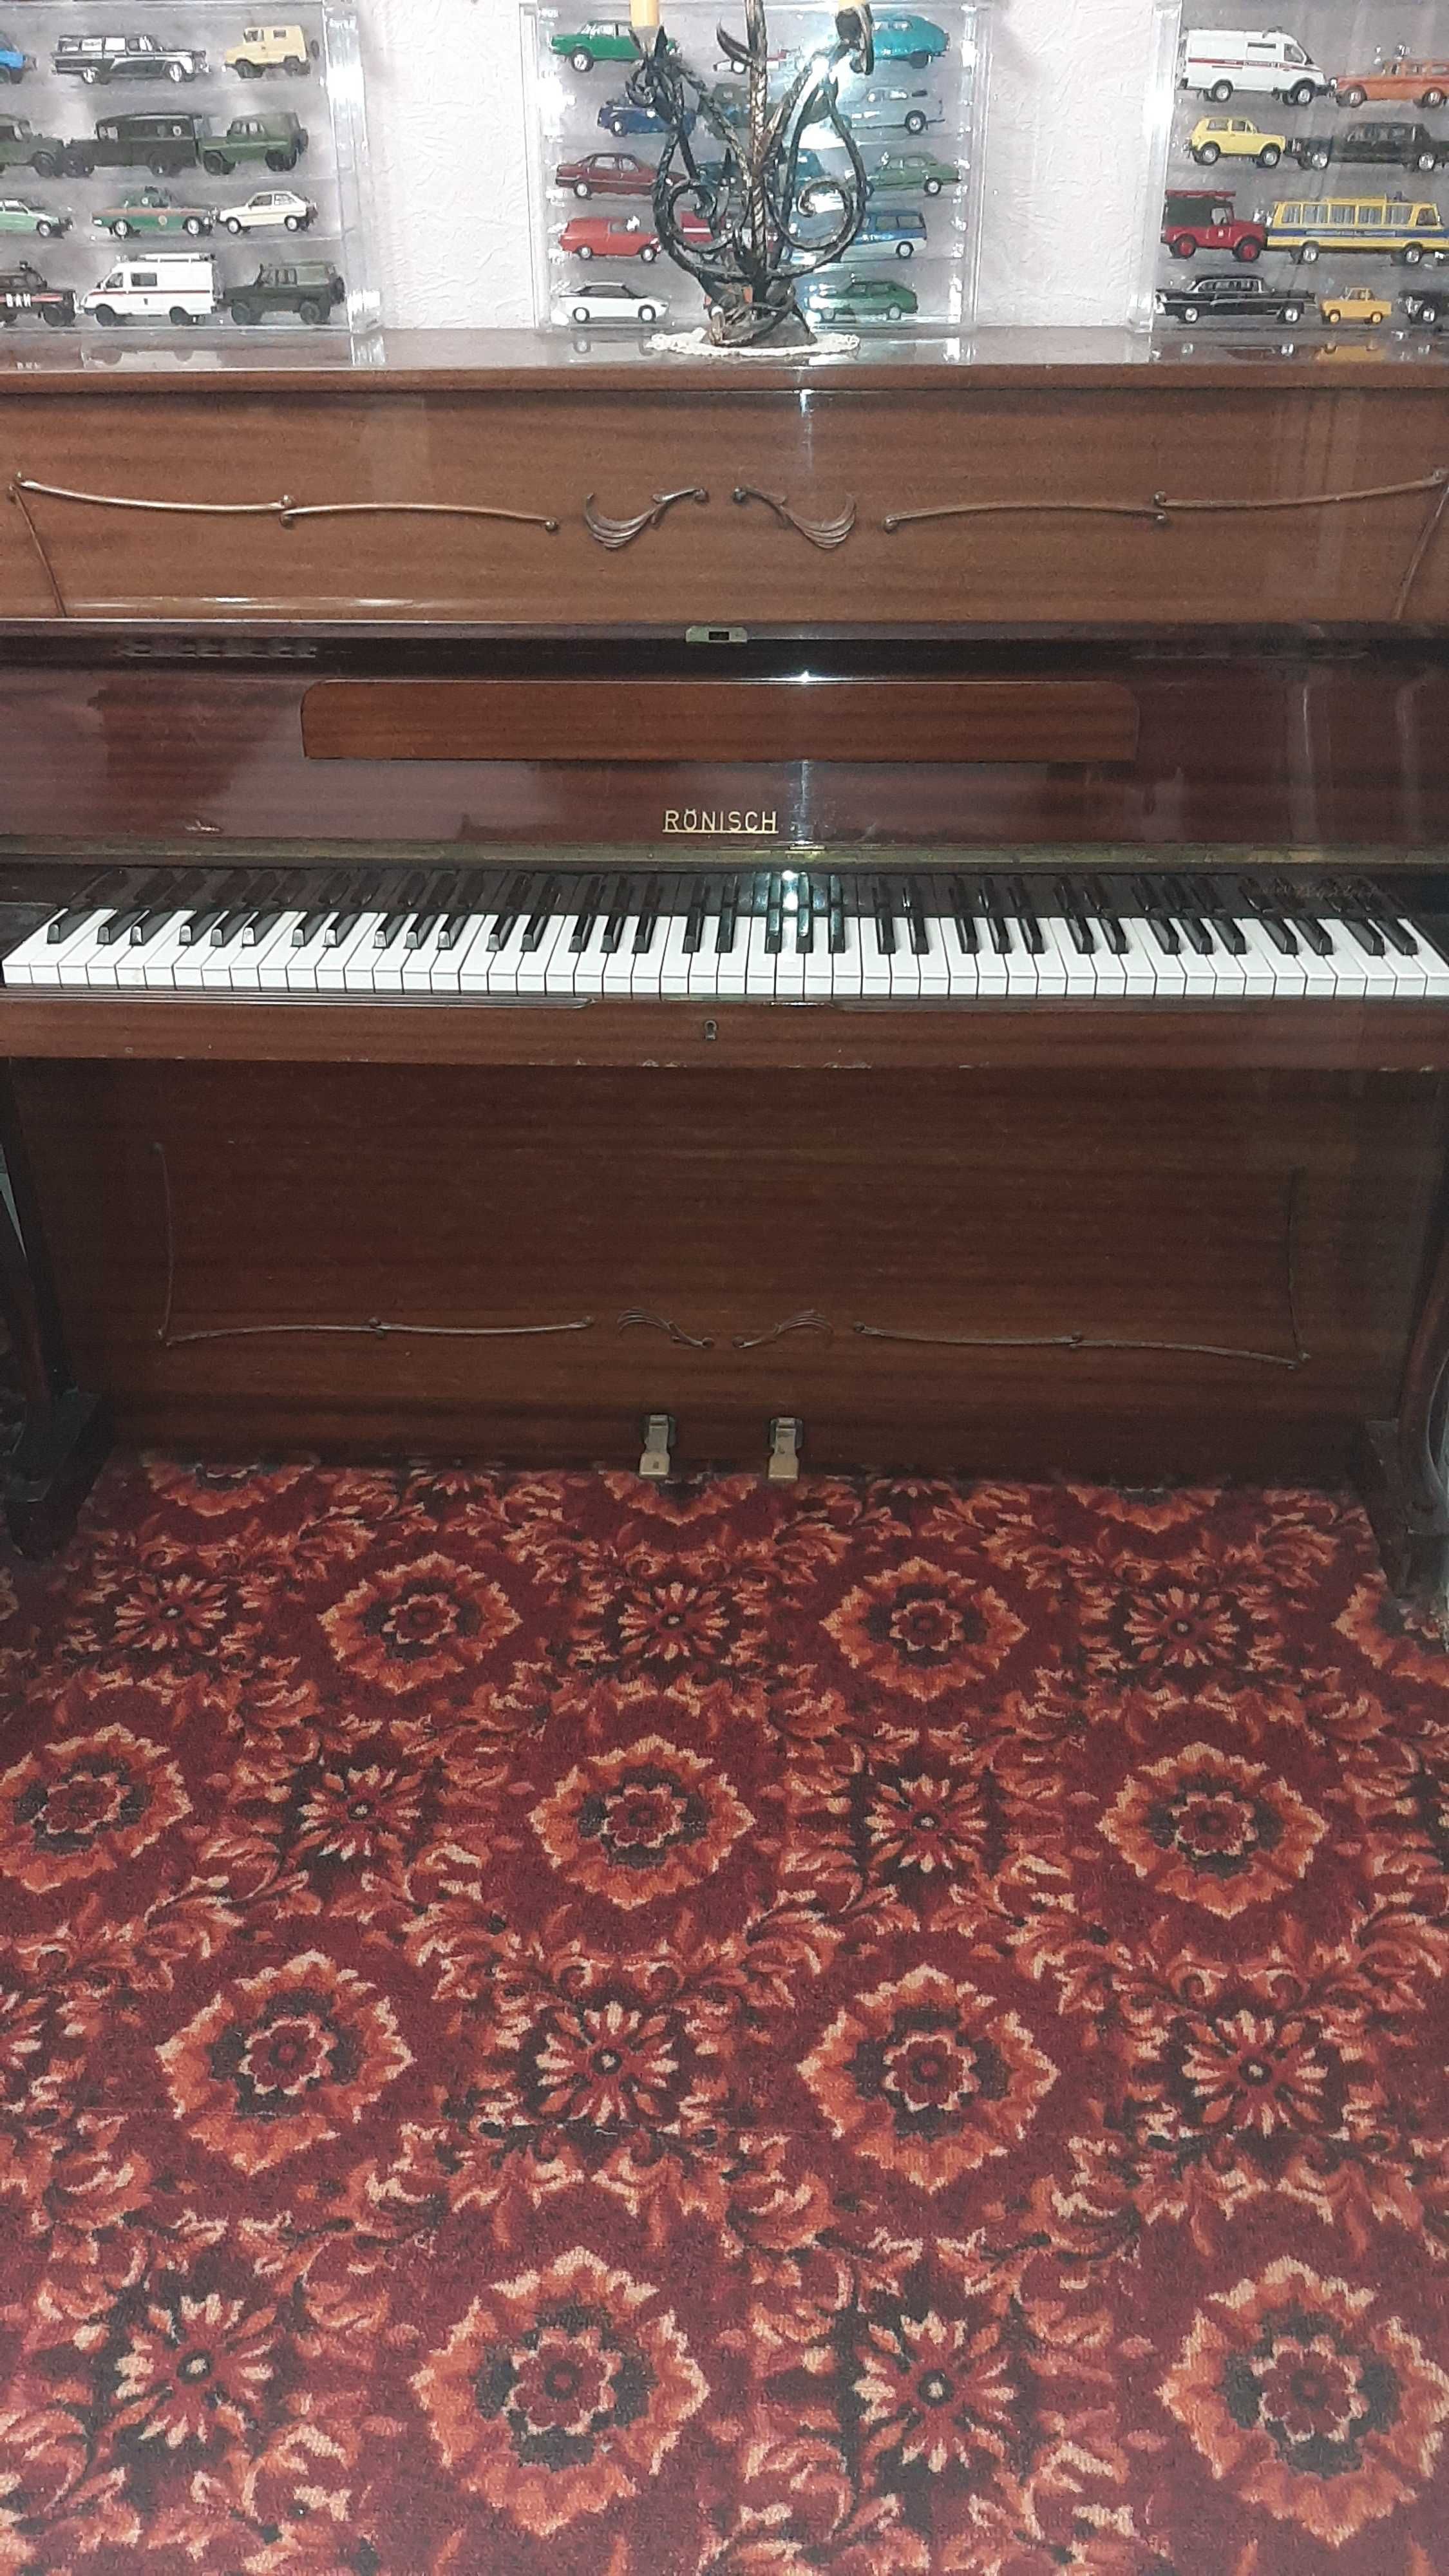 Продам пианино RONISCH производство ГДР.